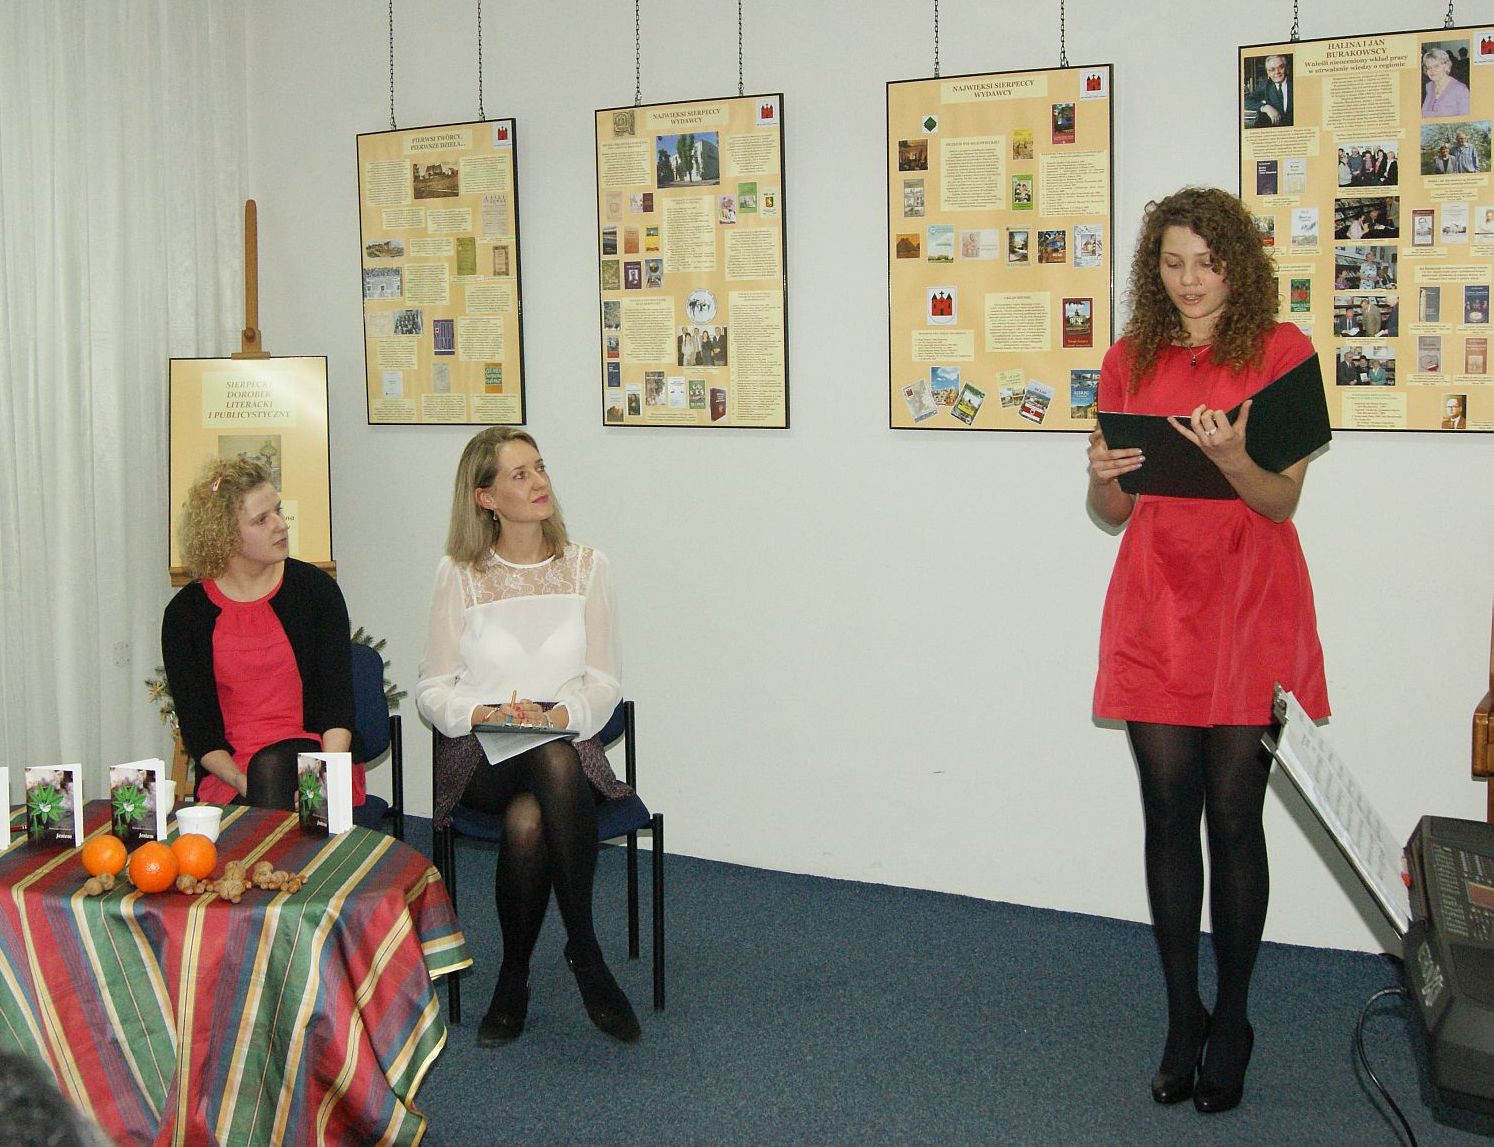 Niespodzank dla Oli bya prezentacja jej wierszy przez koleanki i koleg. Na zdjciu Aleksandra Penszyska i Dominika Karolewska.